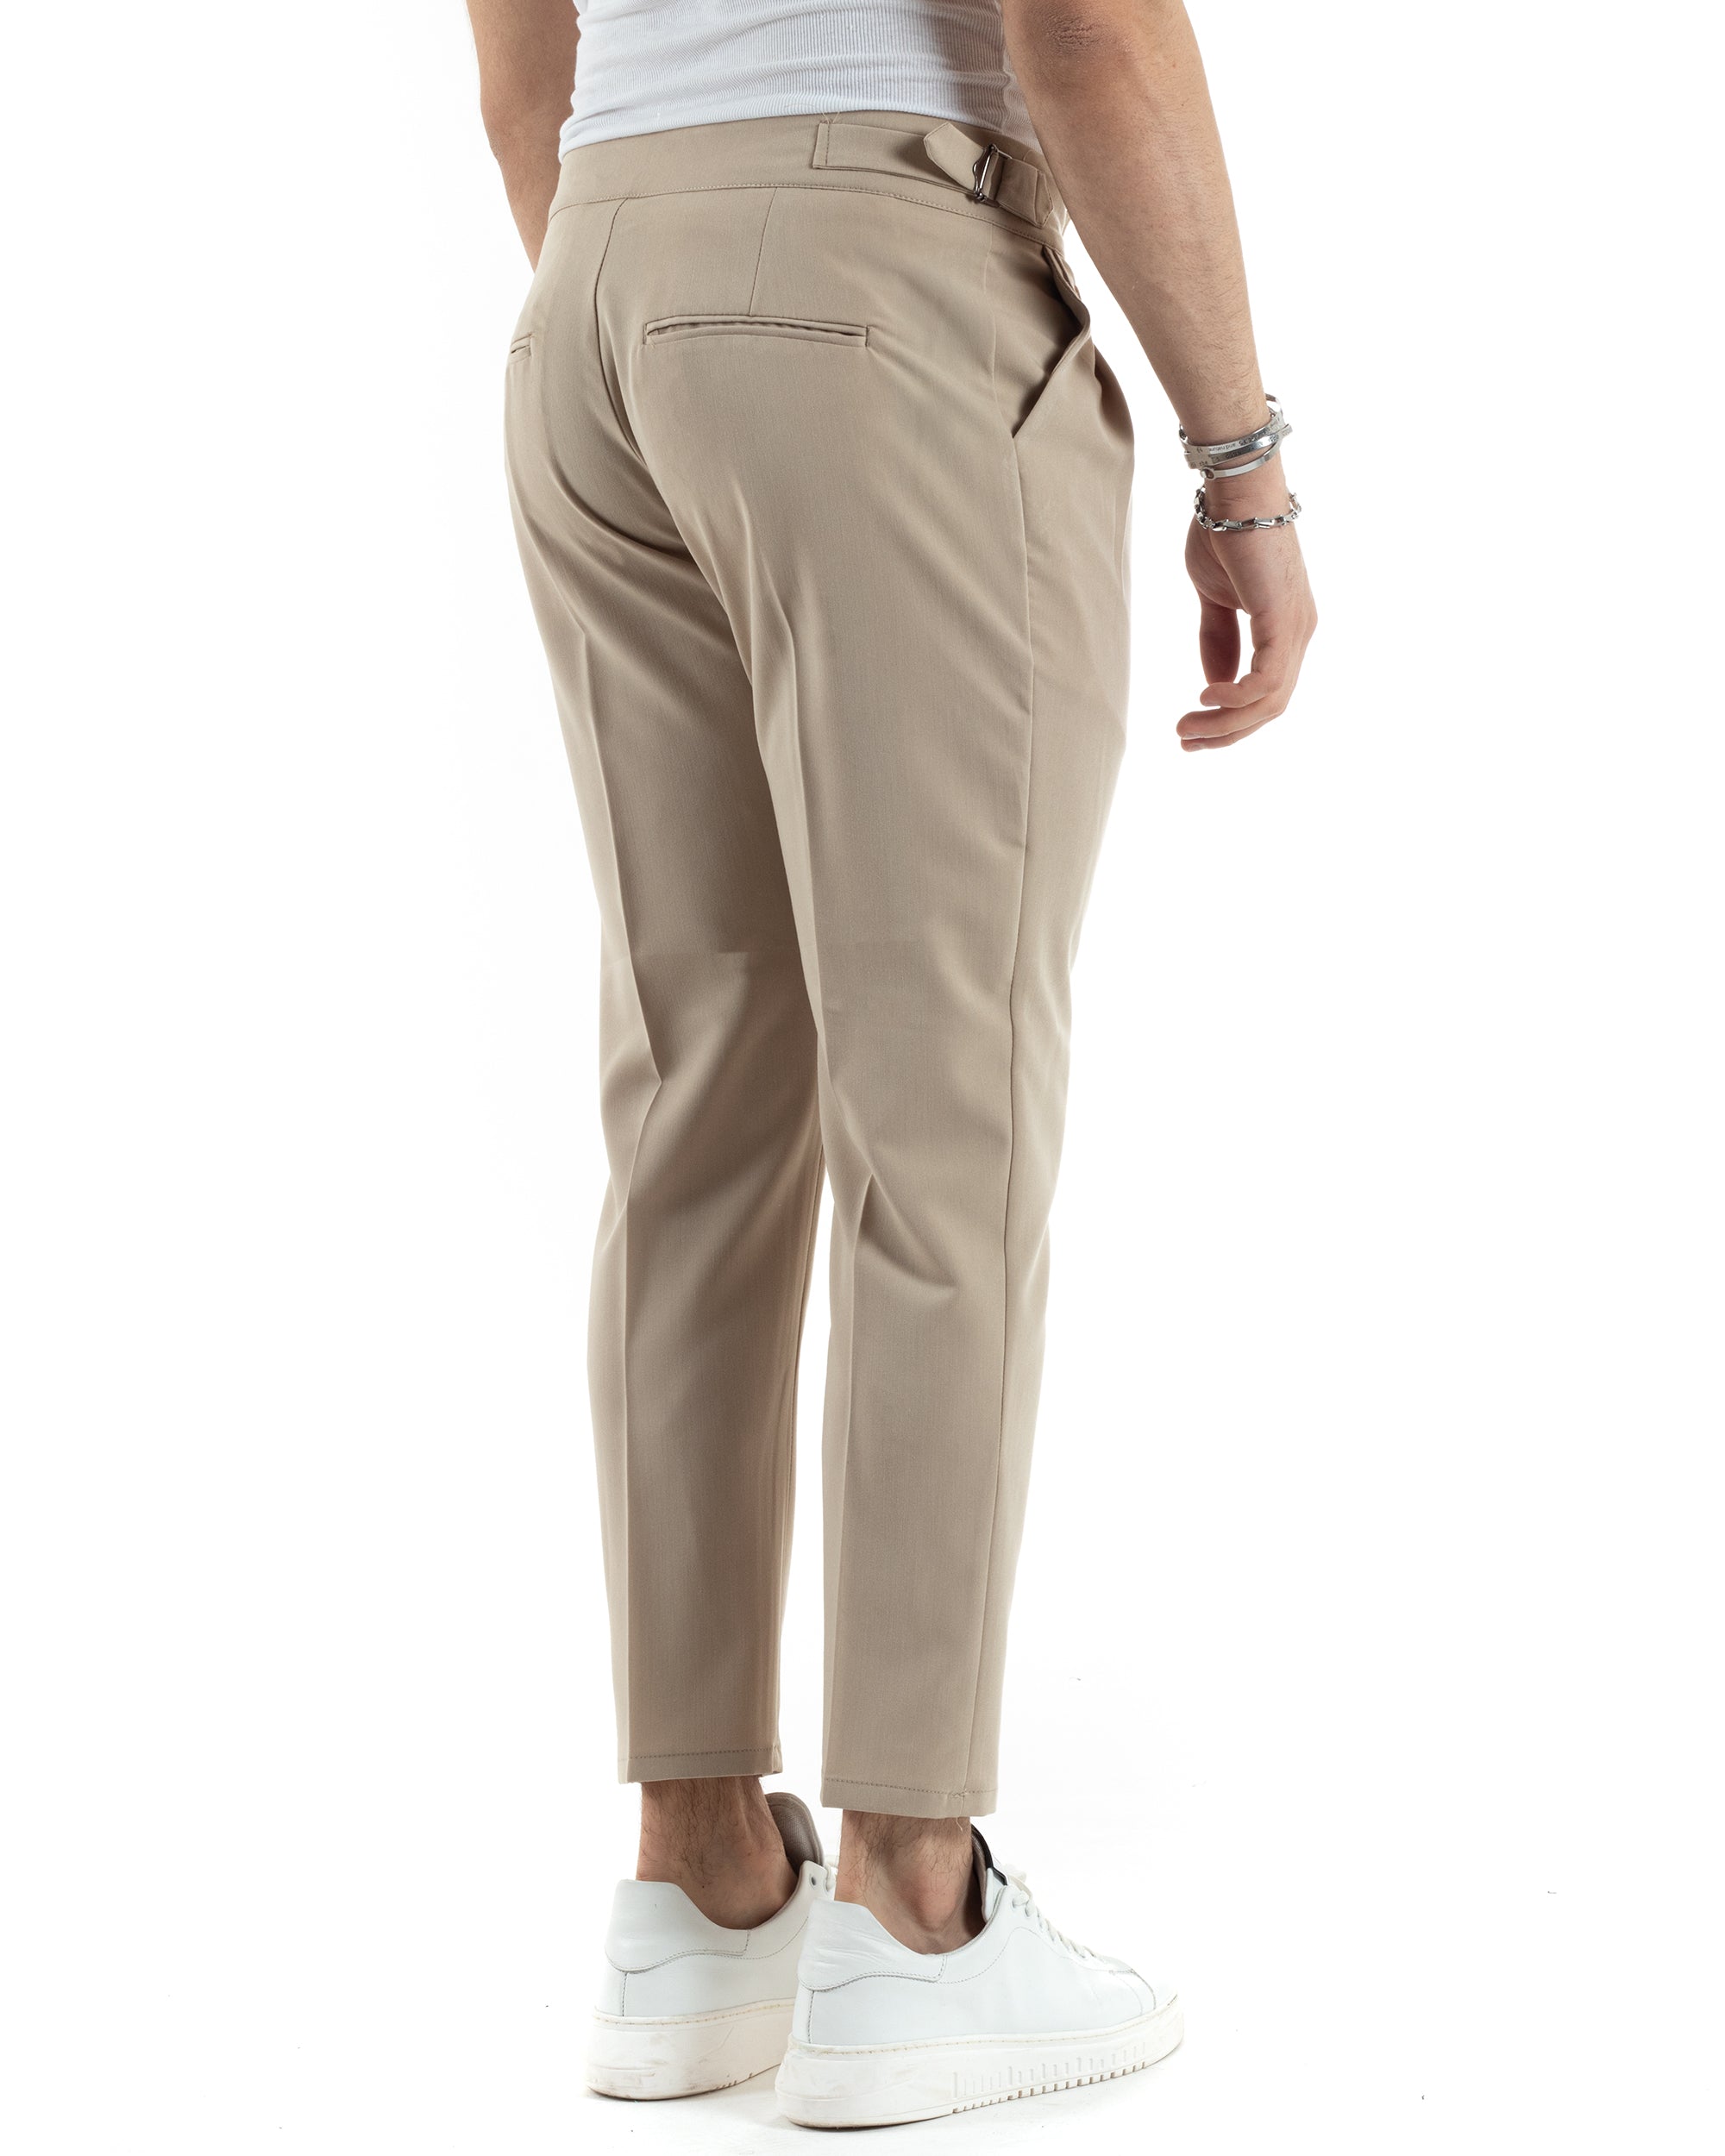 Pantaloni Uomo Tasca America Vita Alta Classico Pinces Abbottonatura Allungata Fibbia Casual Beige GIOSAL-P6041A